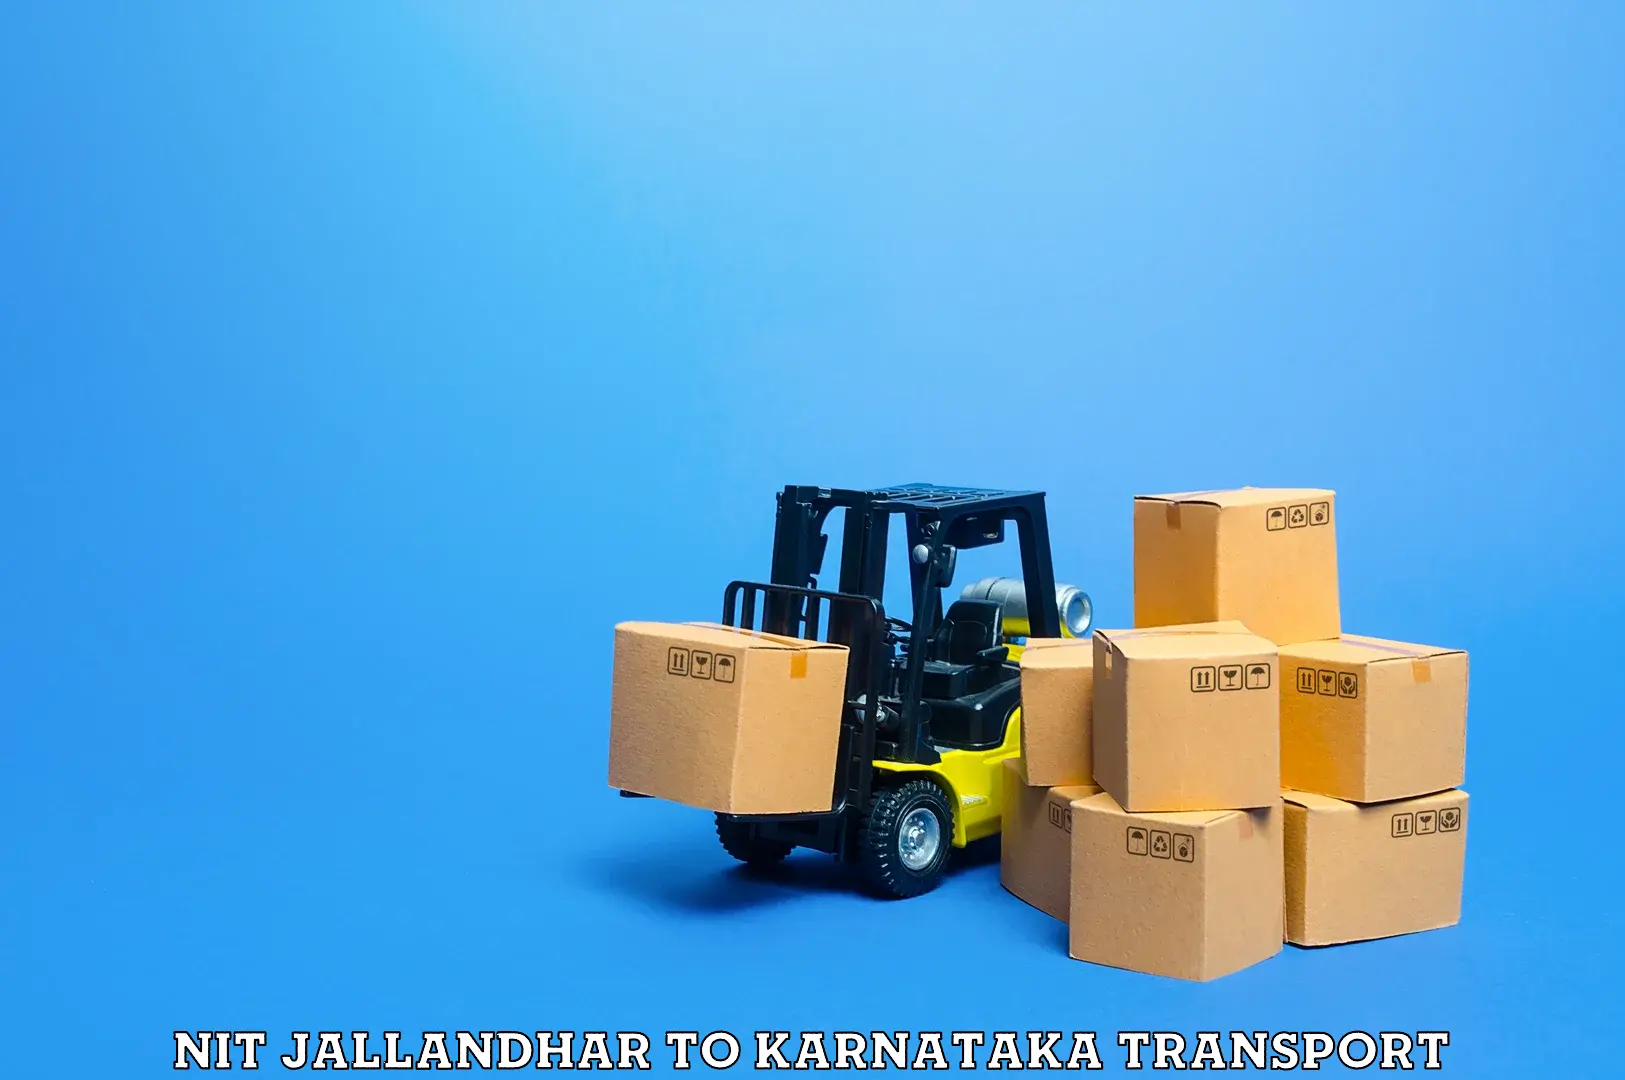 Furniture transport service NIT Jallandhar to Mudhol